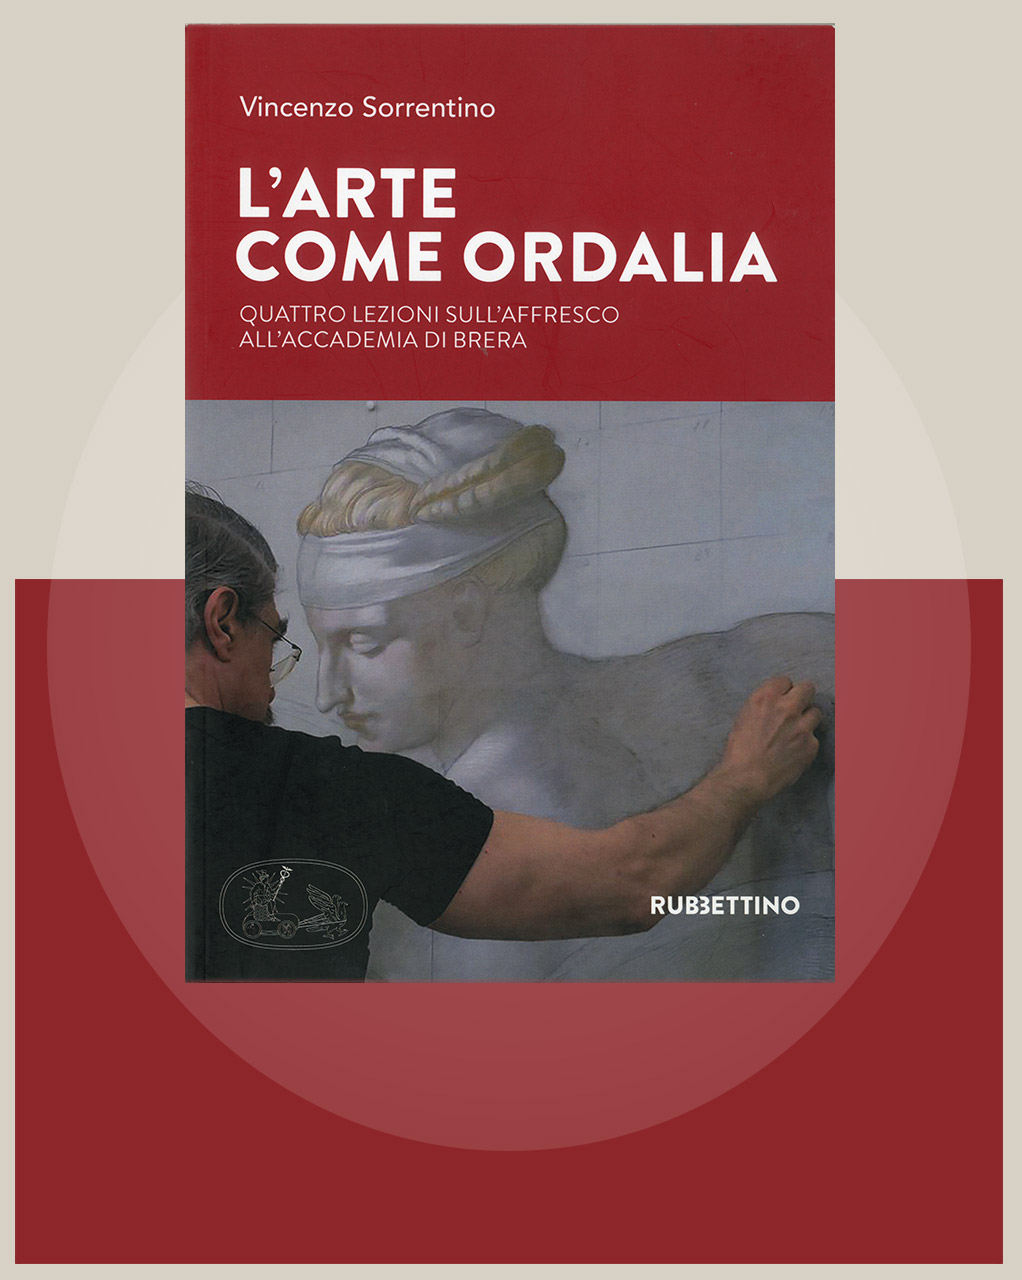 Copertina del libro di Vincenzo Sorrentino "L’ARTE COME ORDALIA"